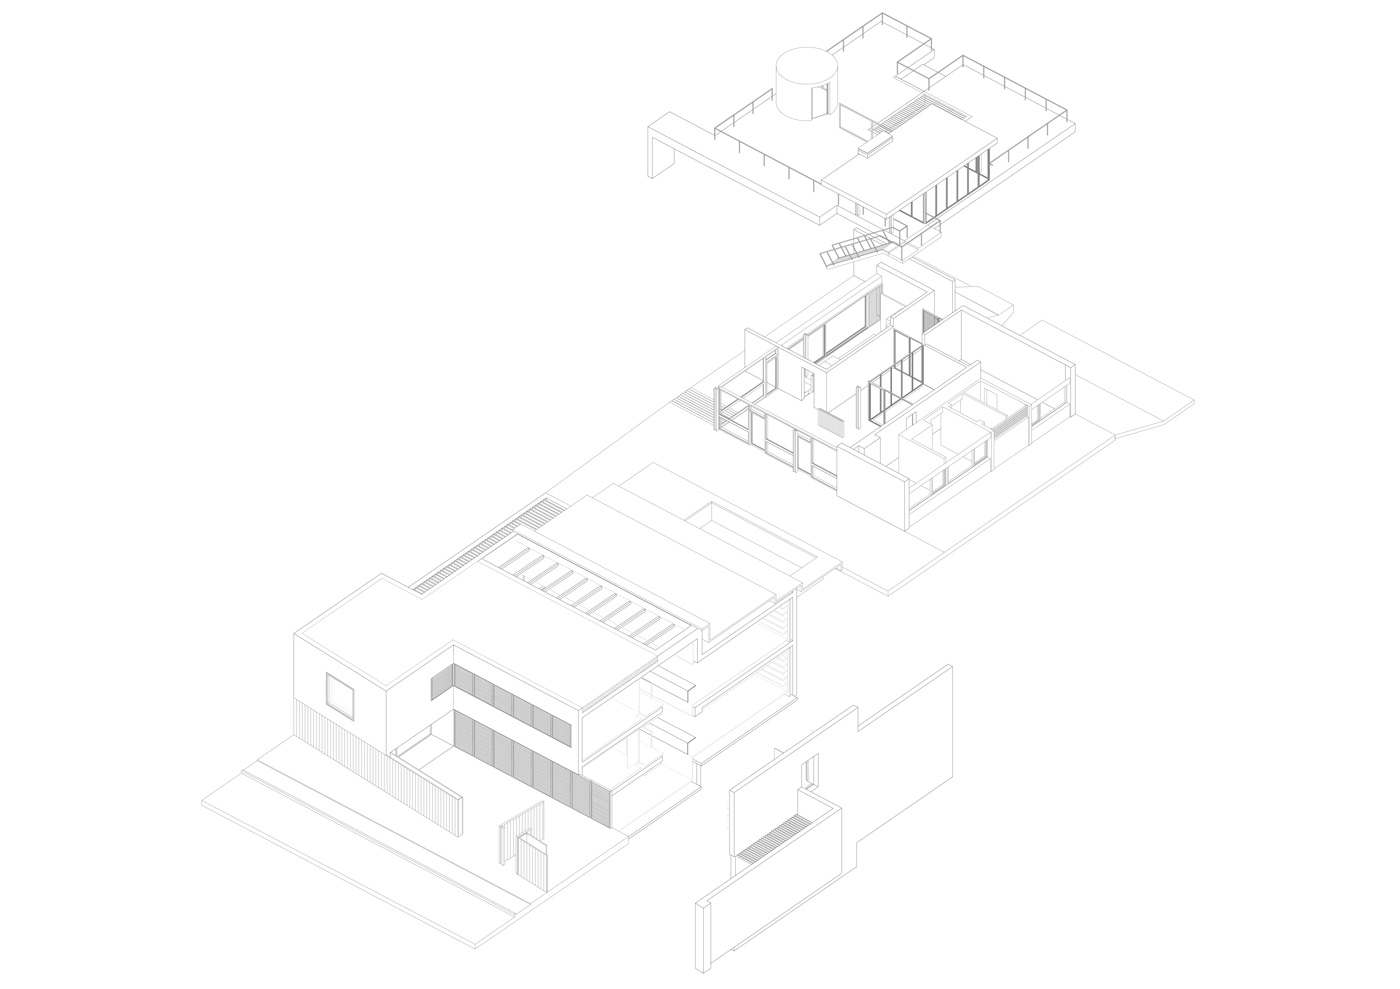 Axonometría de la vivienda y actual ampliación del estudio de Batlle i Roig Arquitectes